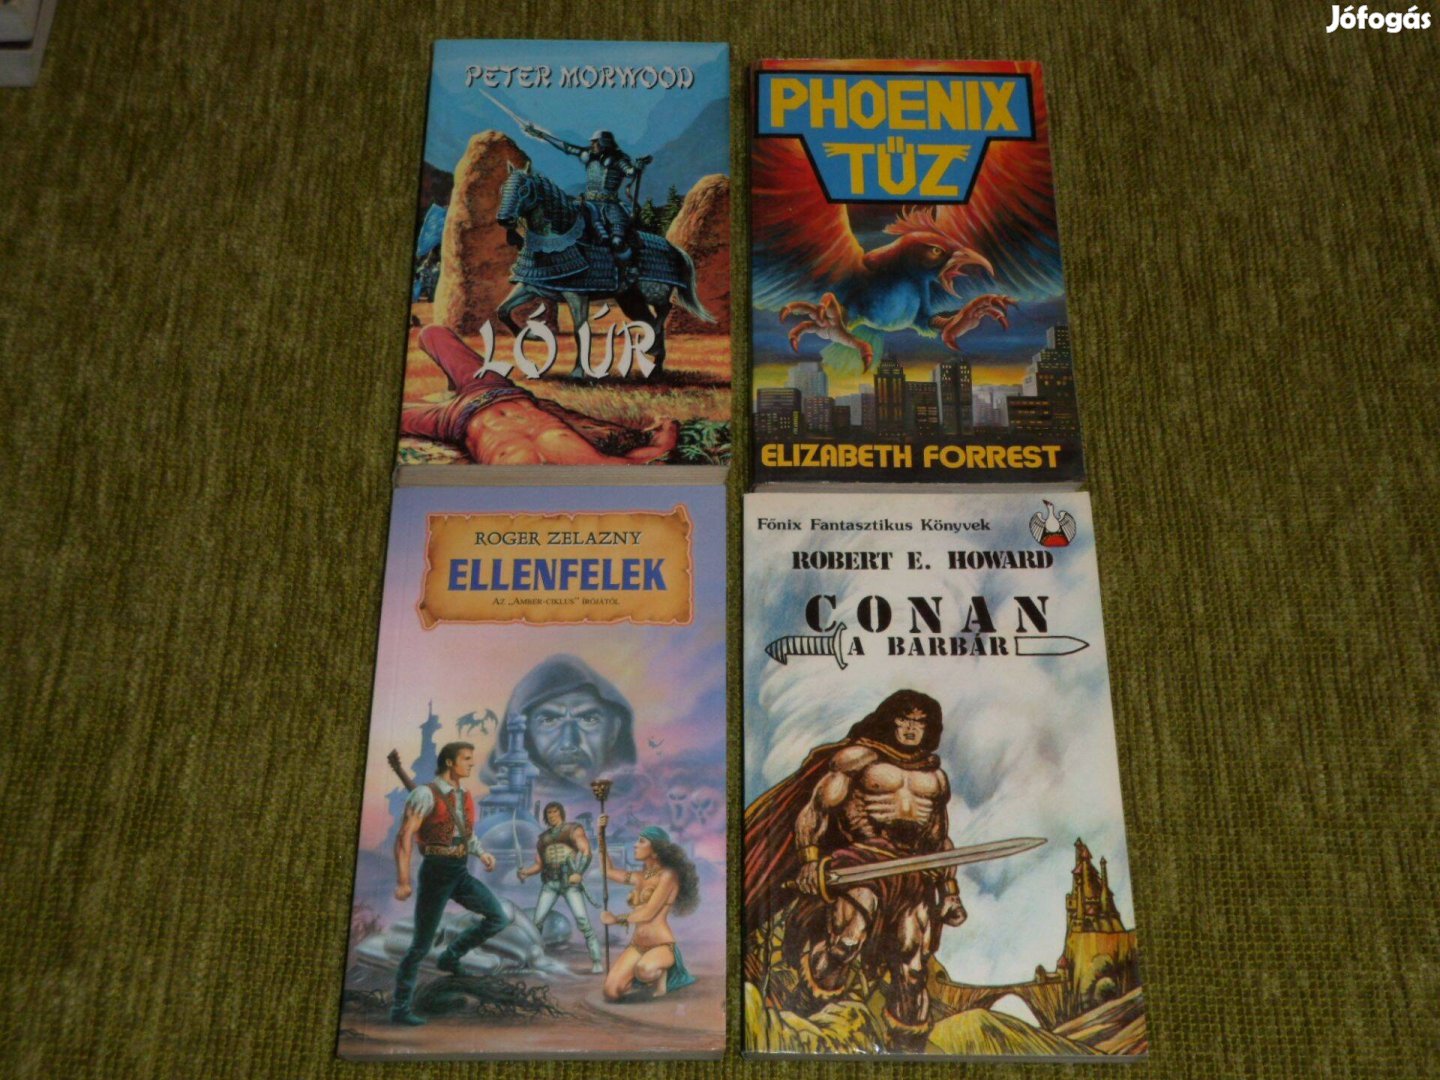 Ló úr + Phoenix tűz + Ellenfelek + Conan a barbár - fantasy könyvek